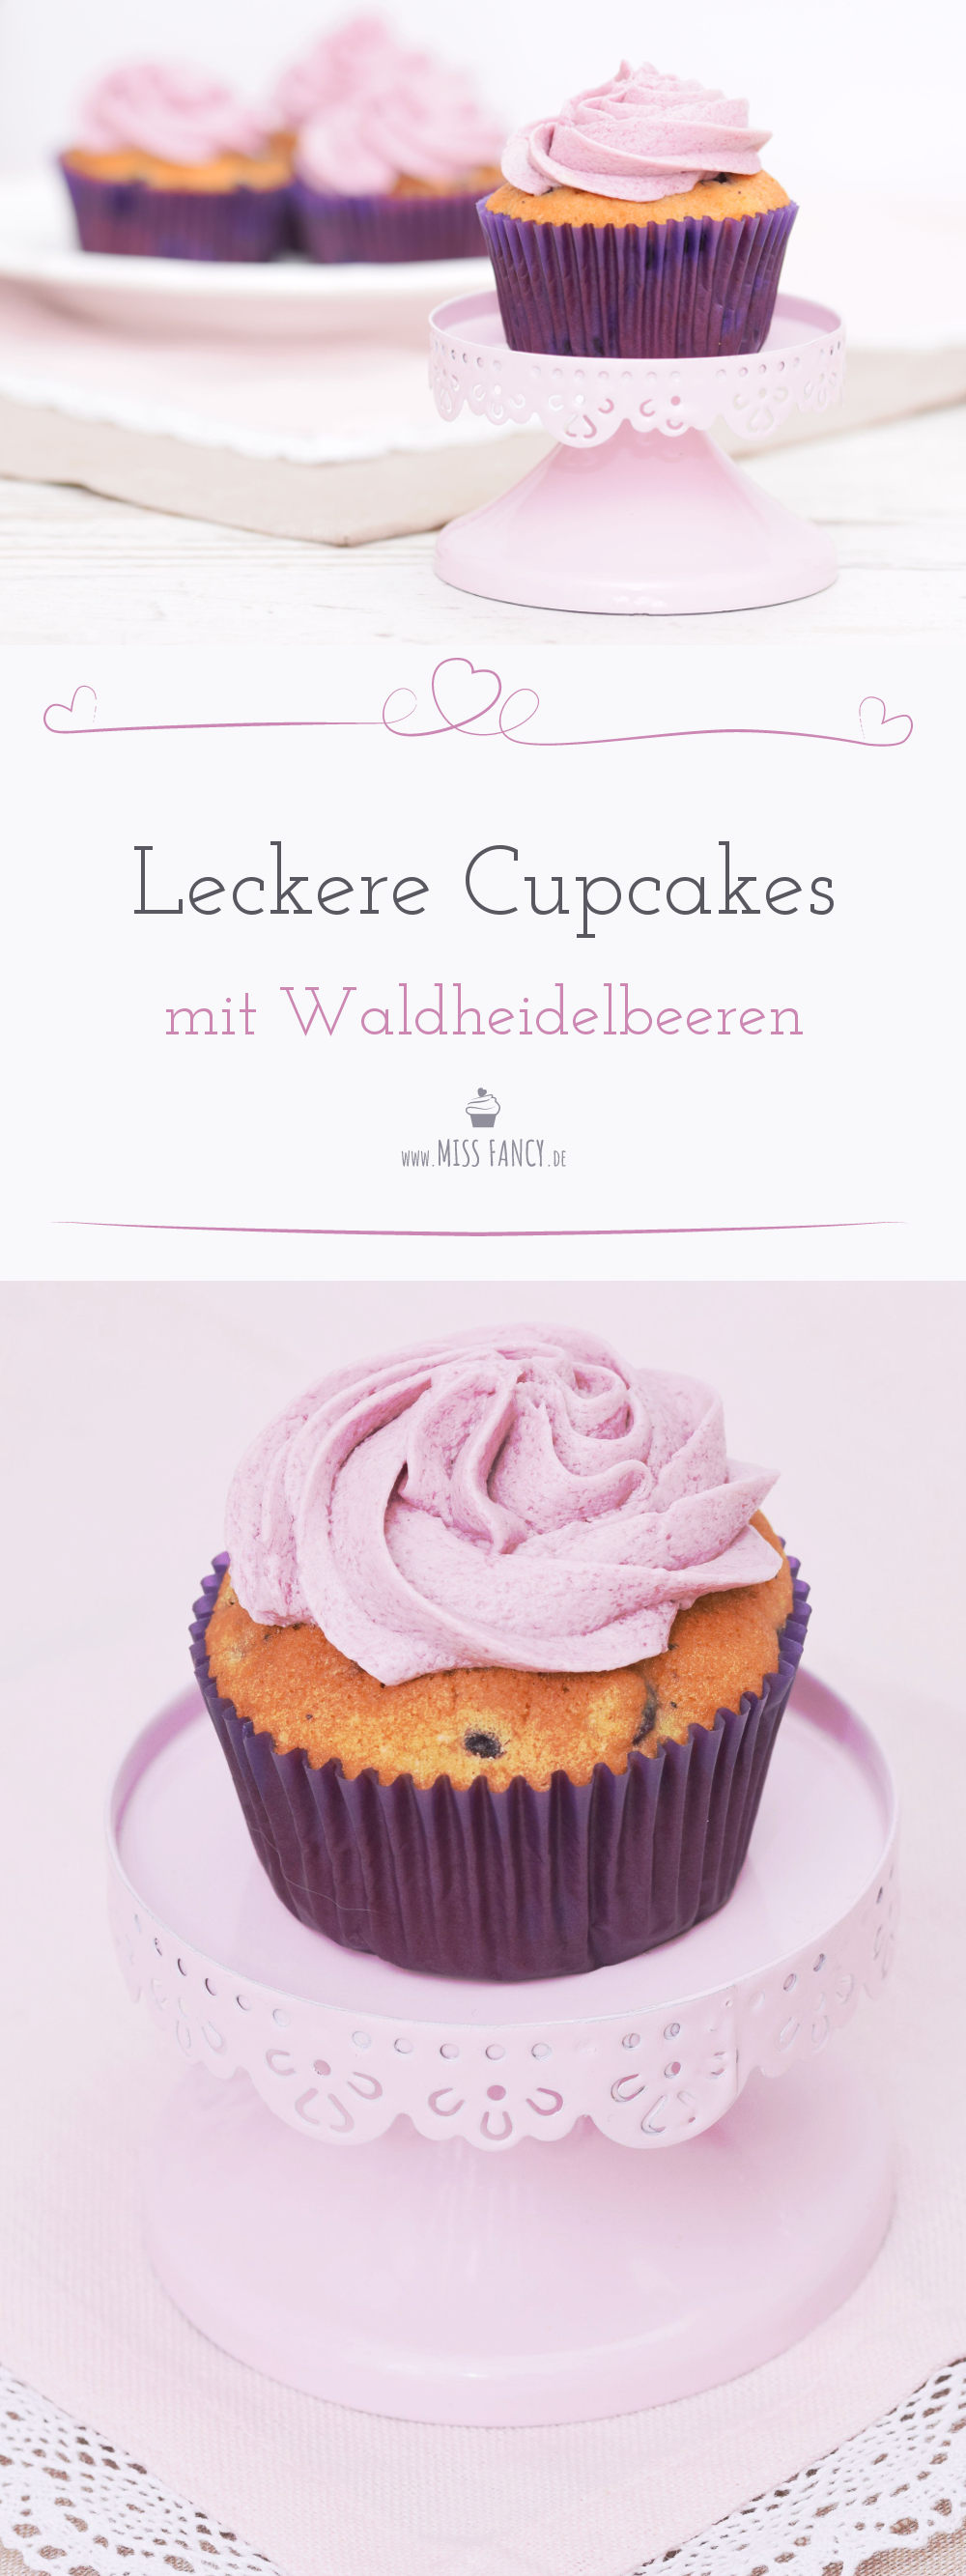 Rezept-Waldheidelbeer-Cupcakes-Missfancy-Foodblog-4